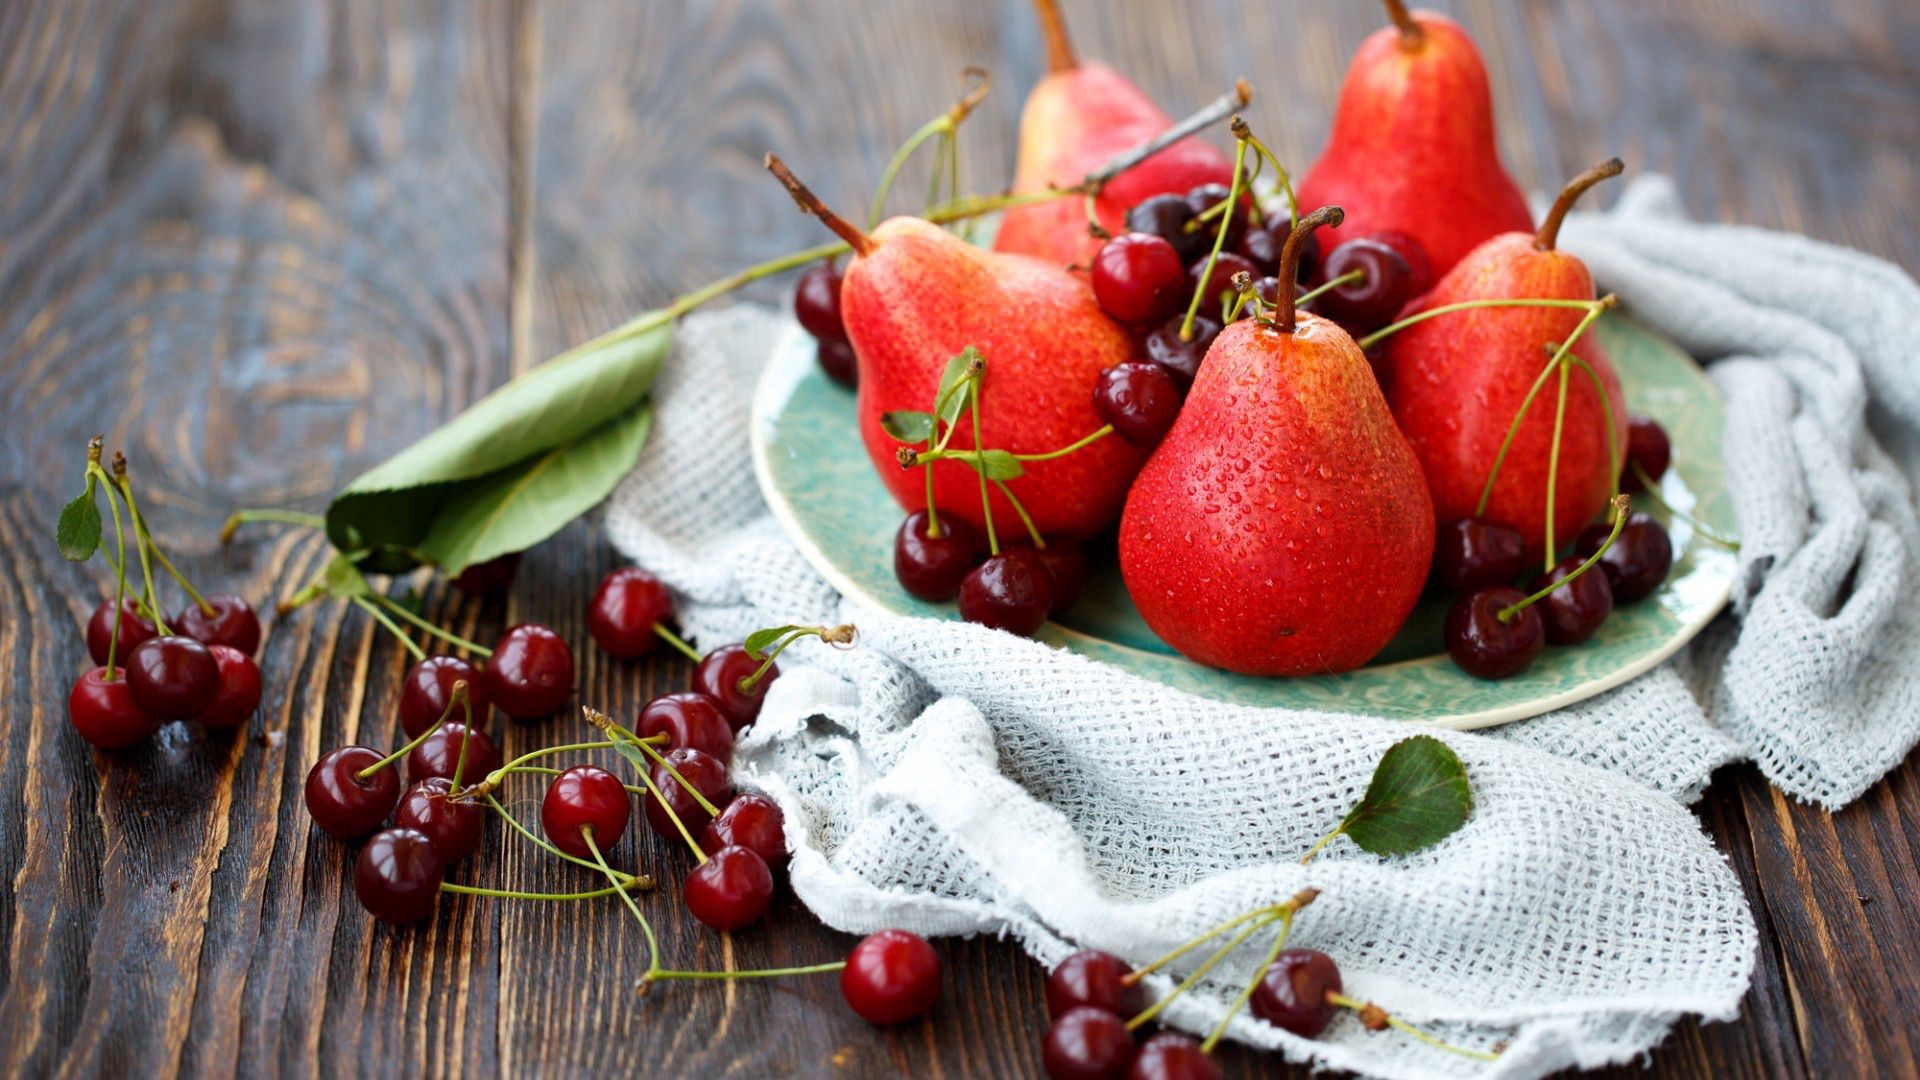 pears, fruits, sweet cherry, food, berries